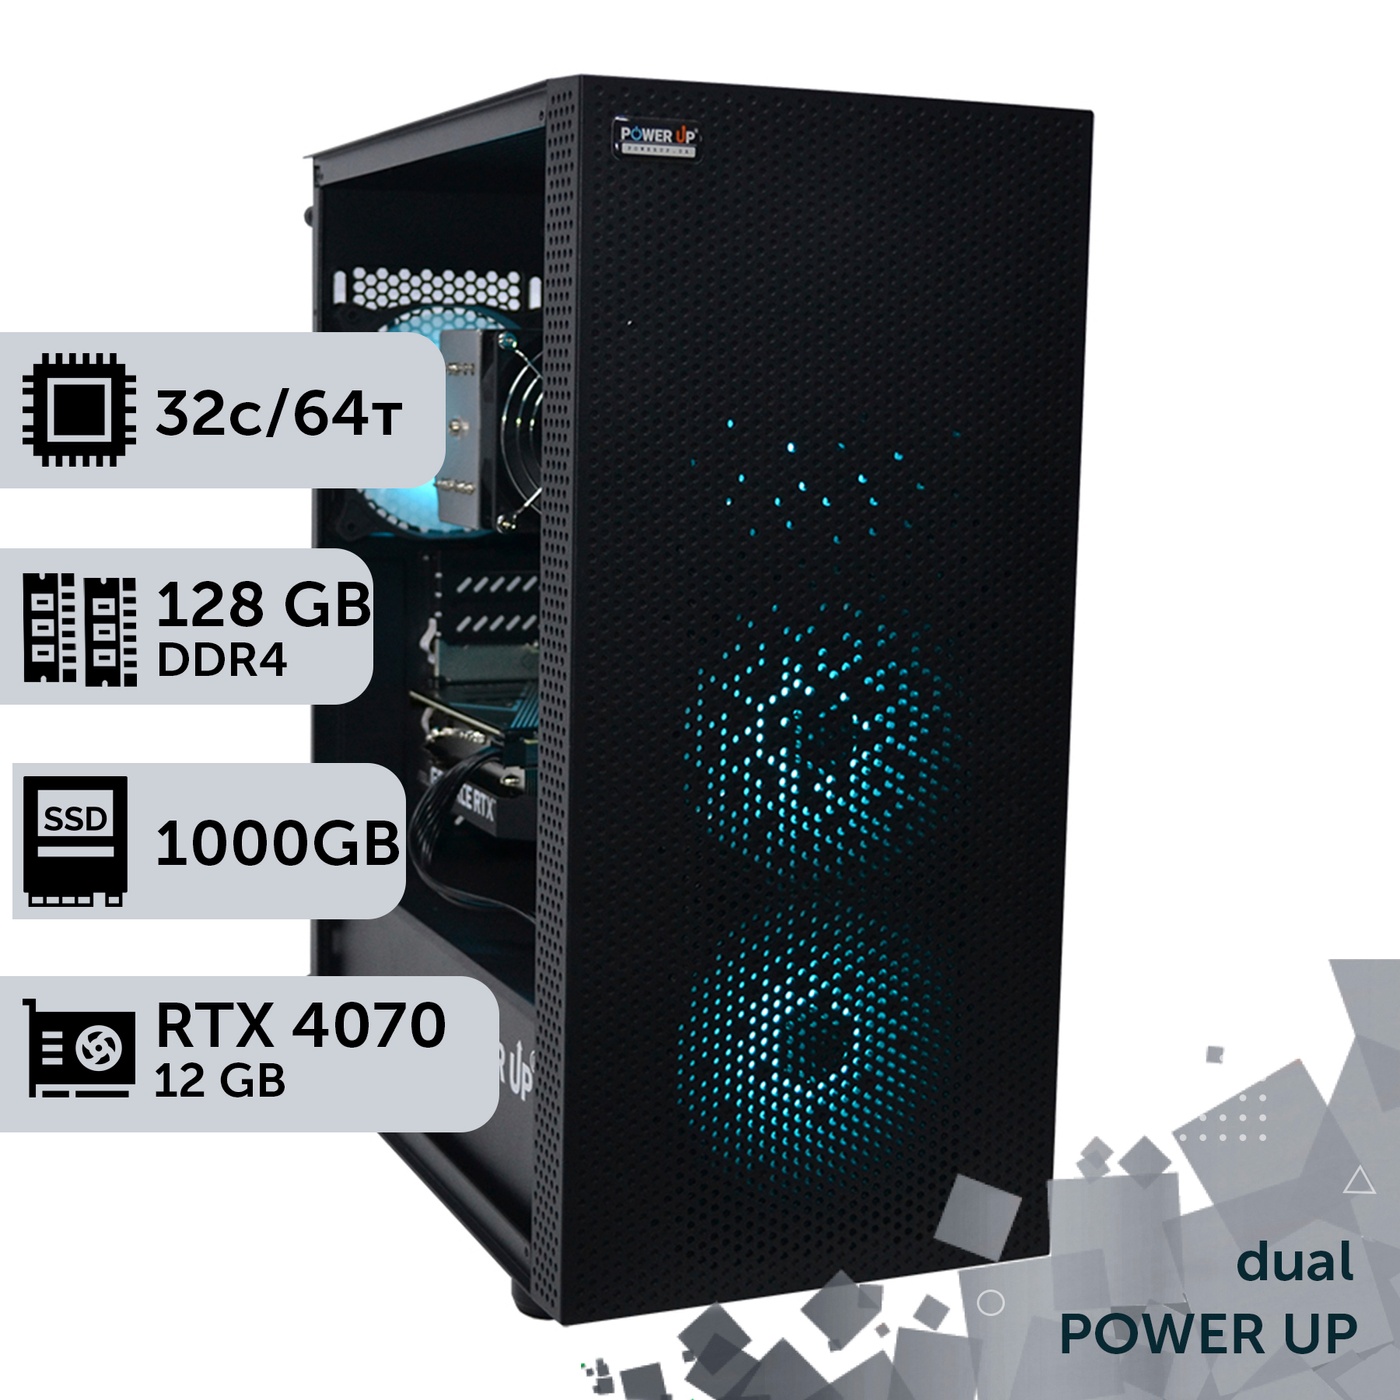 Двухпроцессорная рабочая станция PowerUp #377 AMD EPYC 7282 x2/128 GB/SSD 1TB/GeForce RTX 4070 12GB